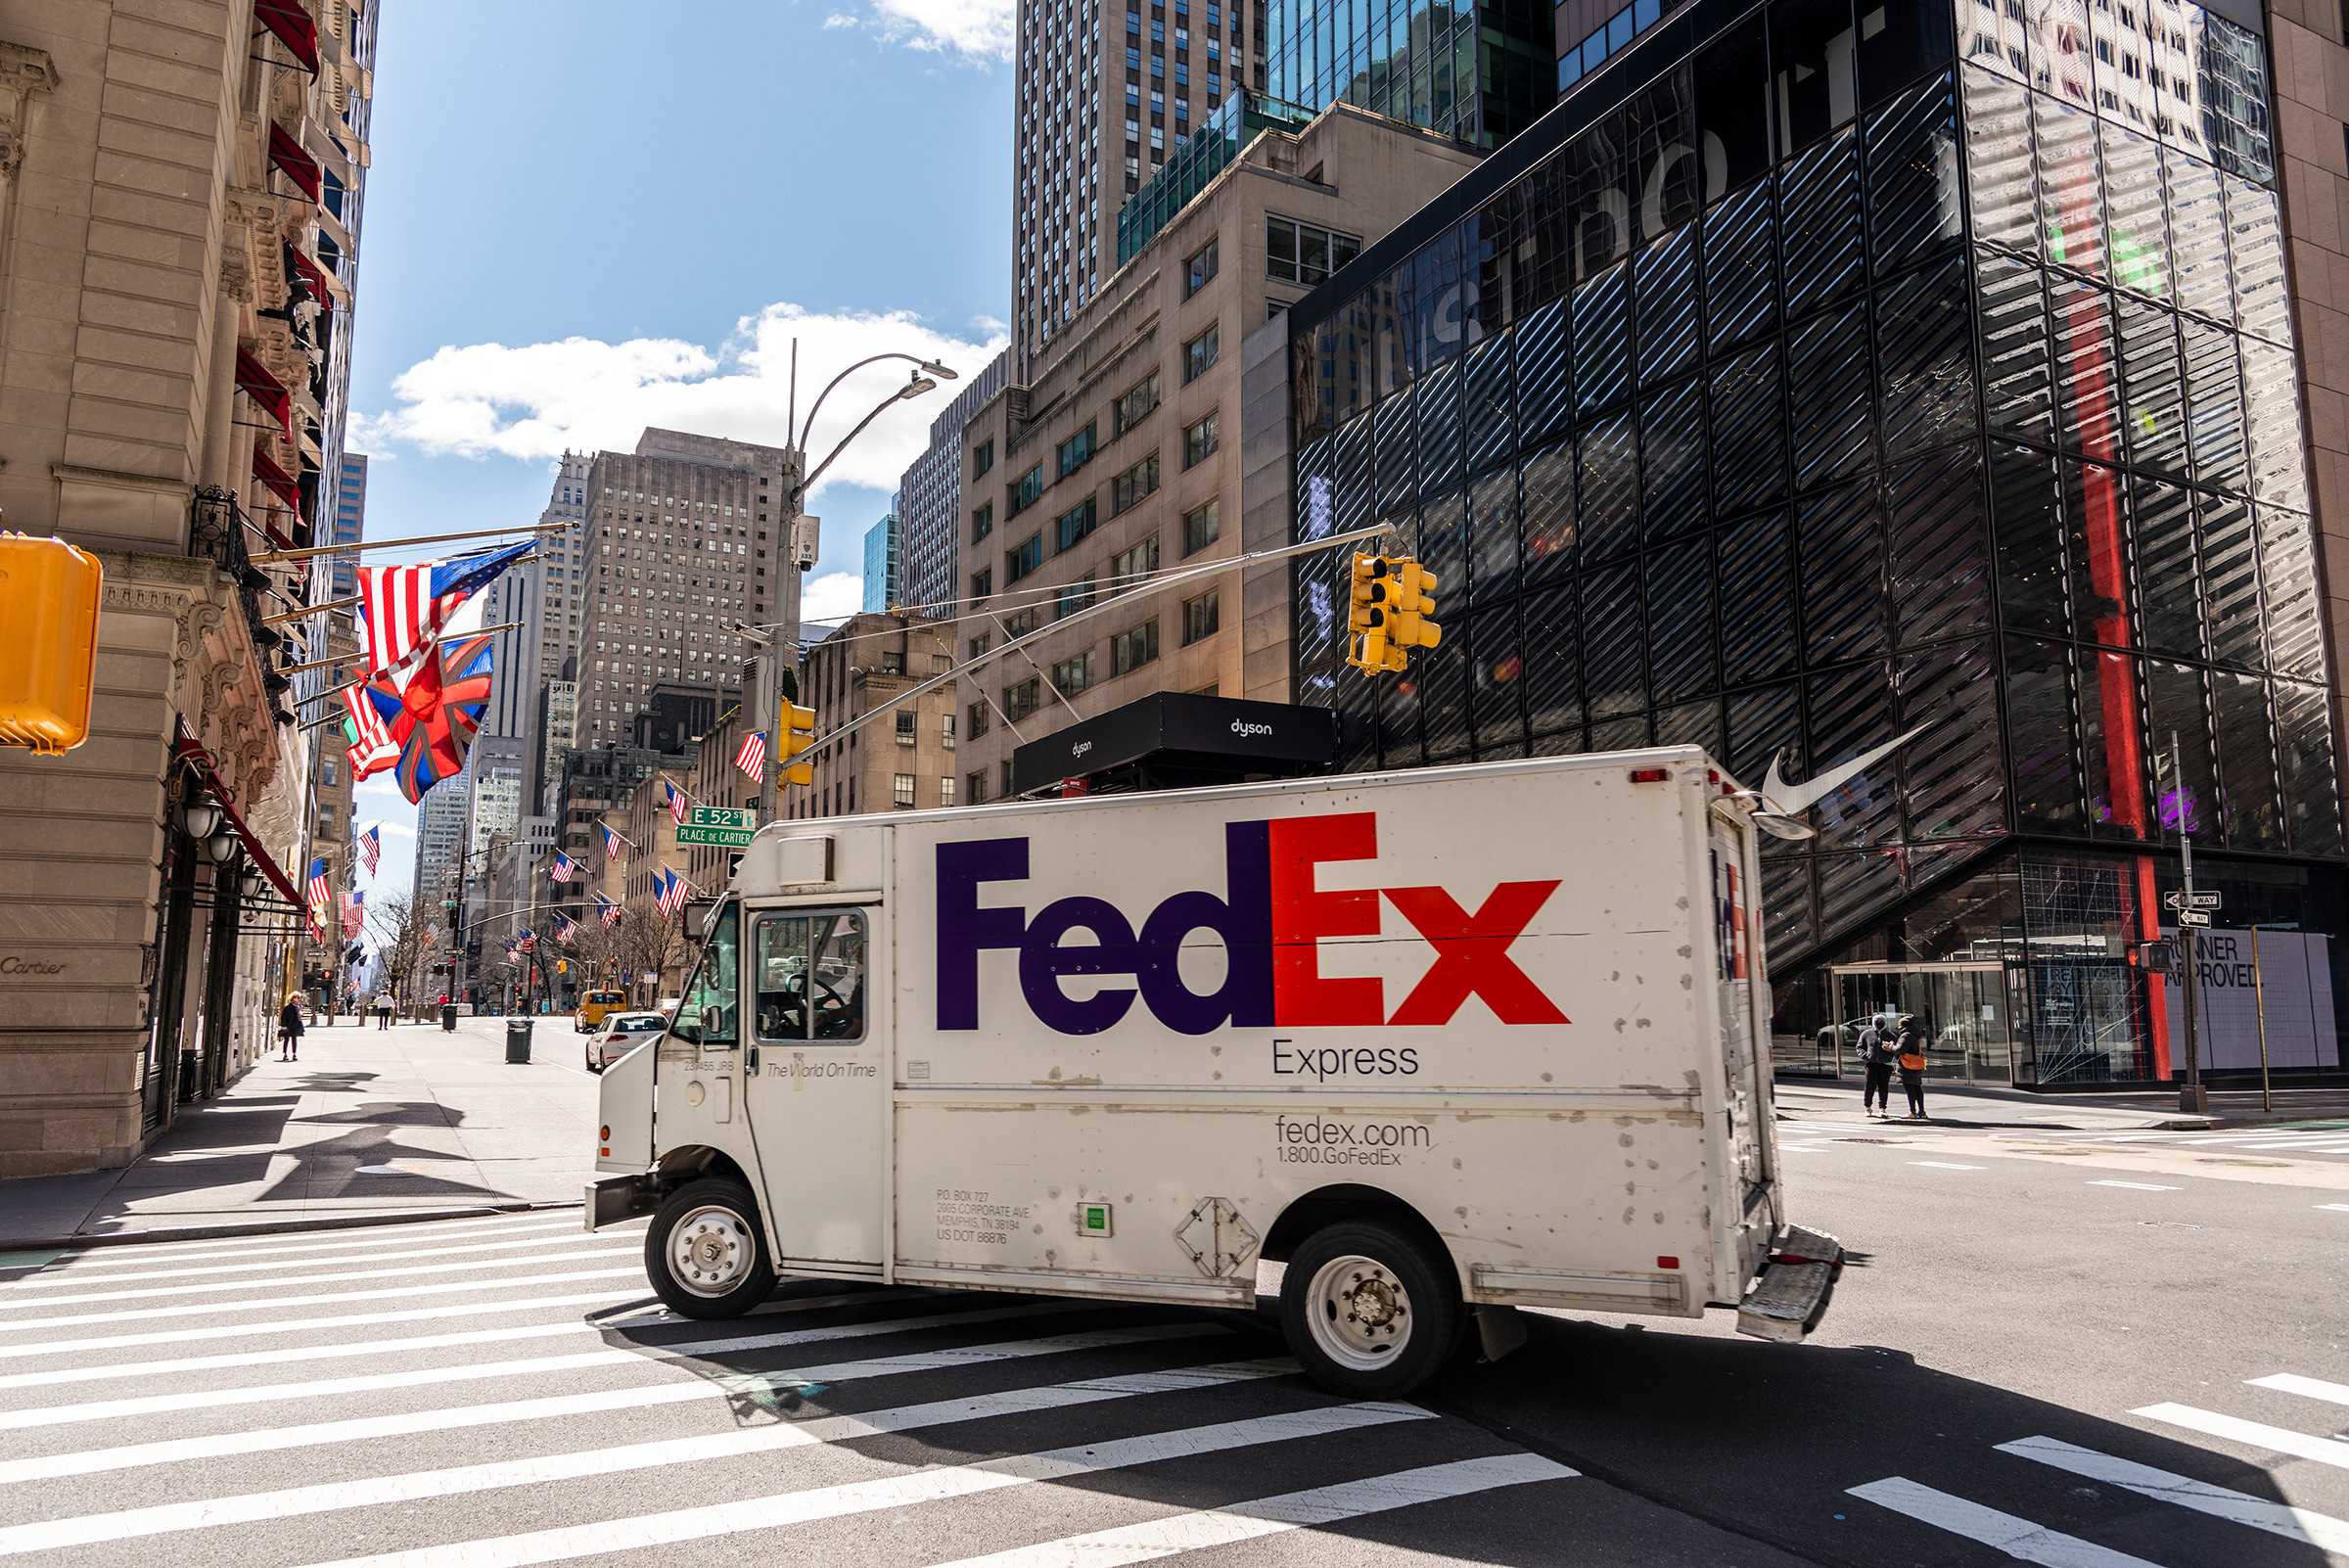 A FedEx truck in New York City on April 2, 2020. (Stefan Falke—laif/Redux)